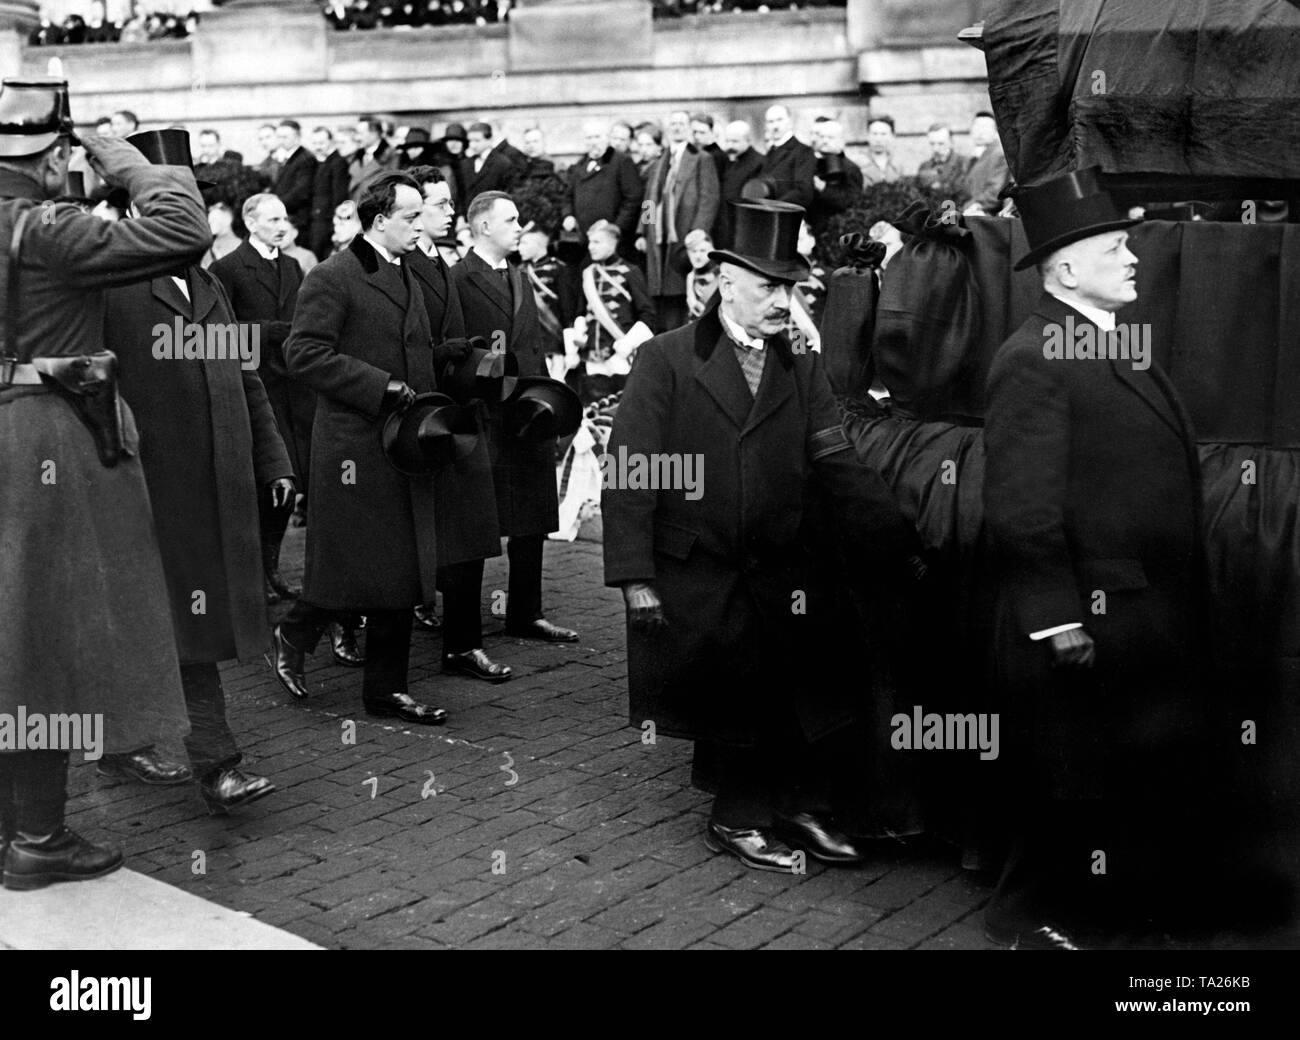 Dietro la bara i due figli, come pure il figlio-in-legge (da sinistra a destra) del compianto Presidente del Reich. Foto Stock